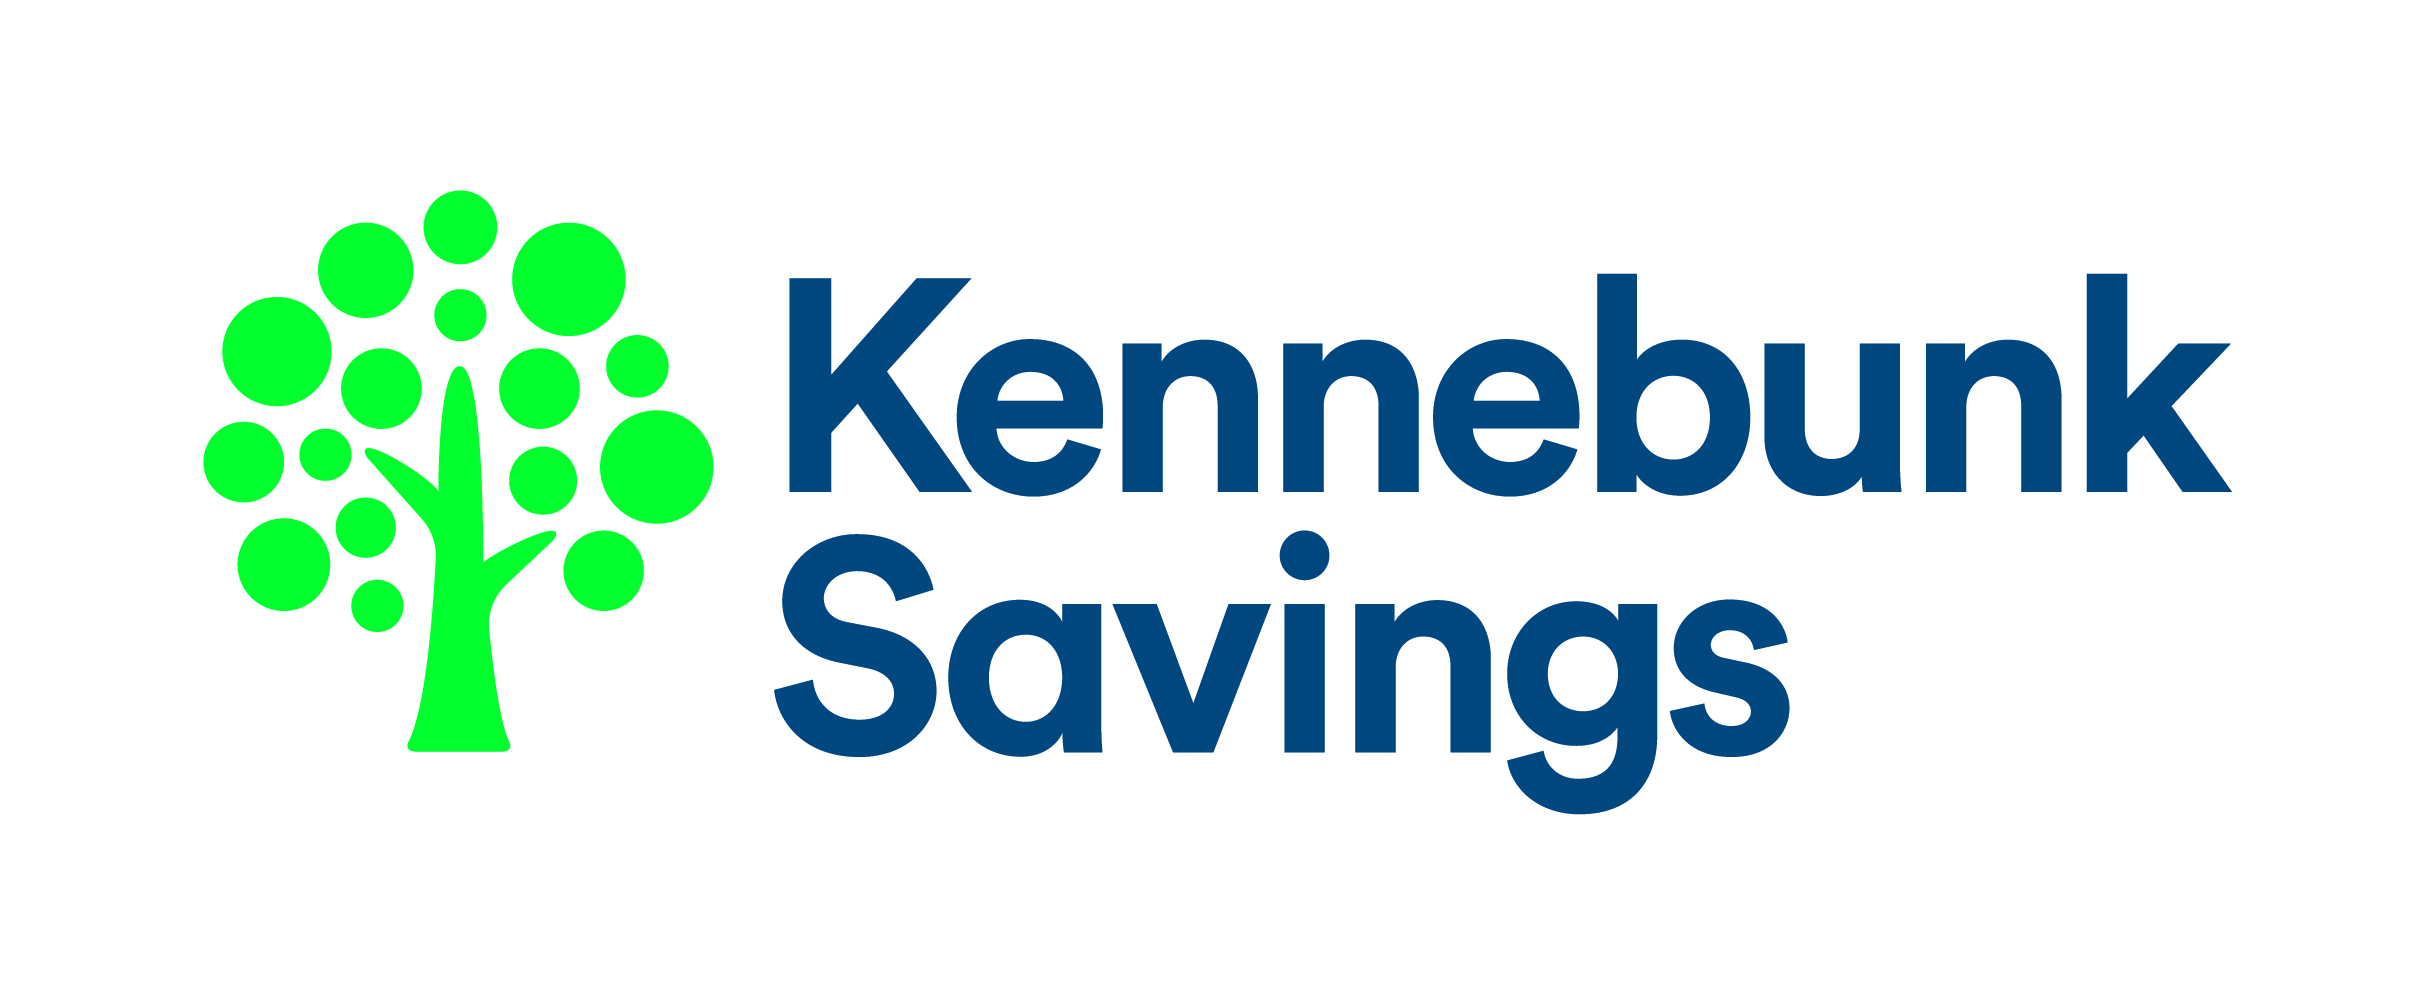 Kennebunk Savings Bank 